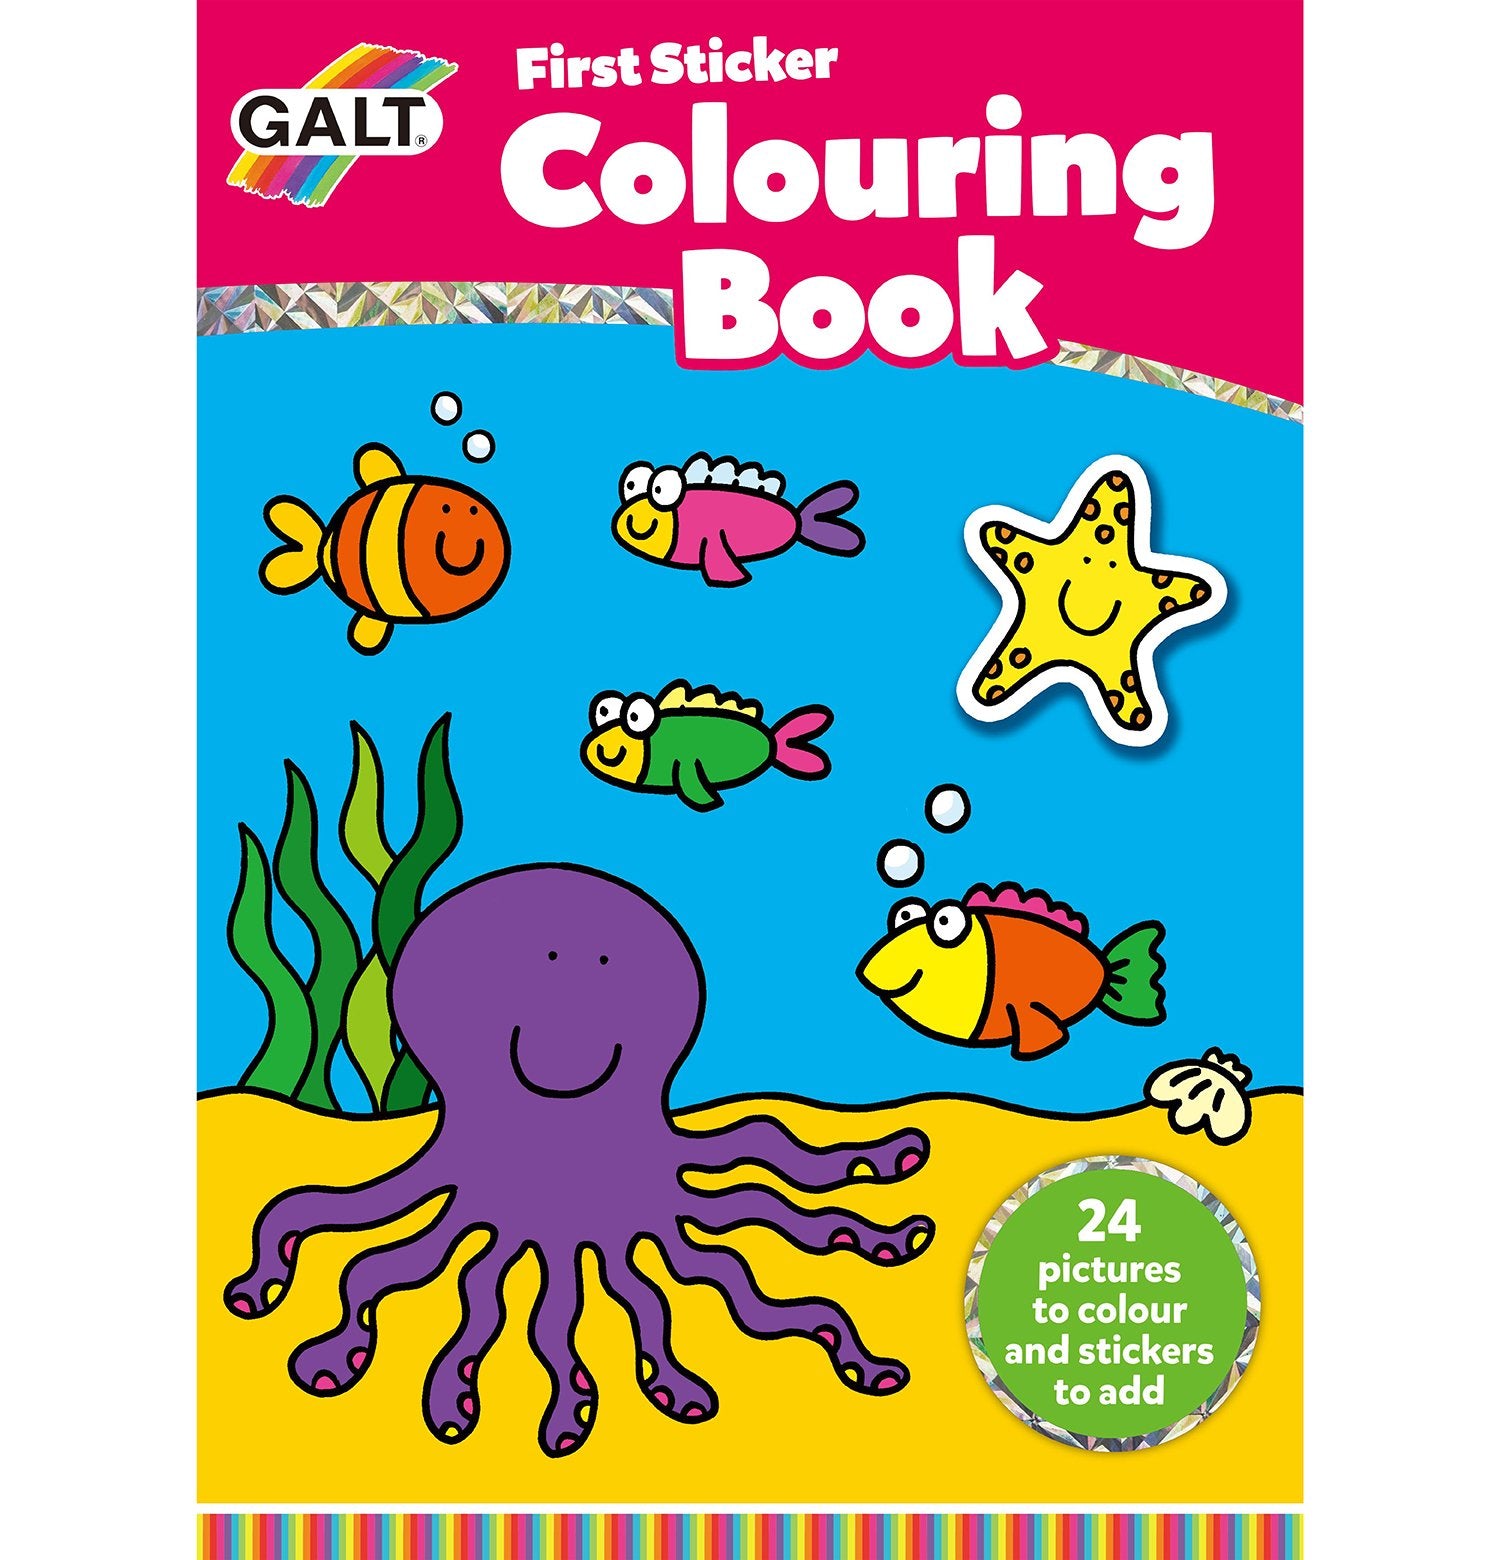 First Sticker Colouring Book - Galt